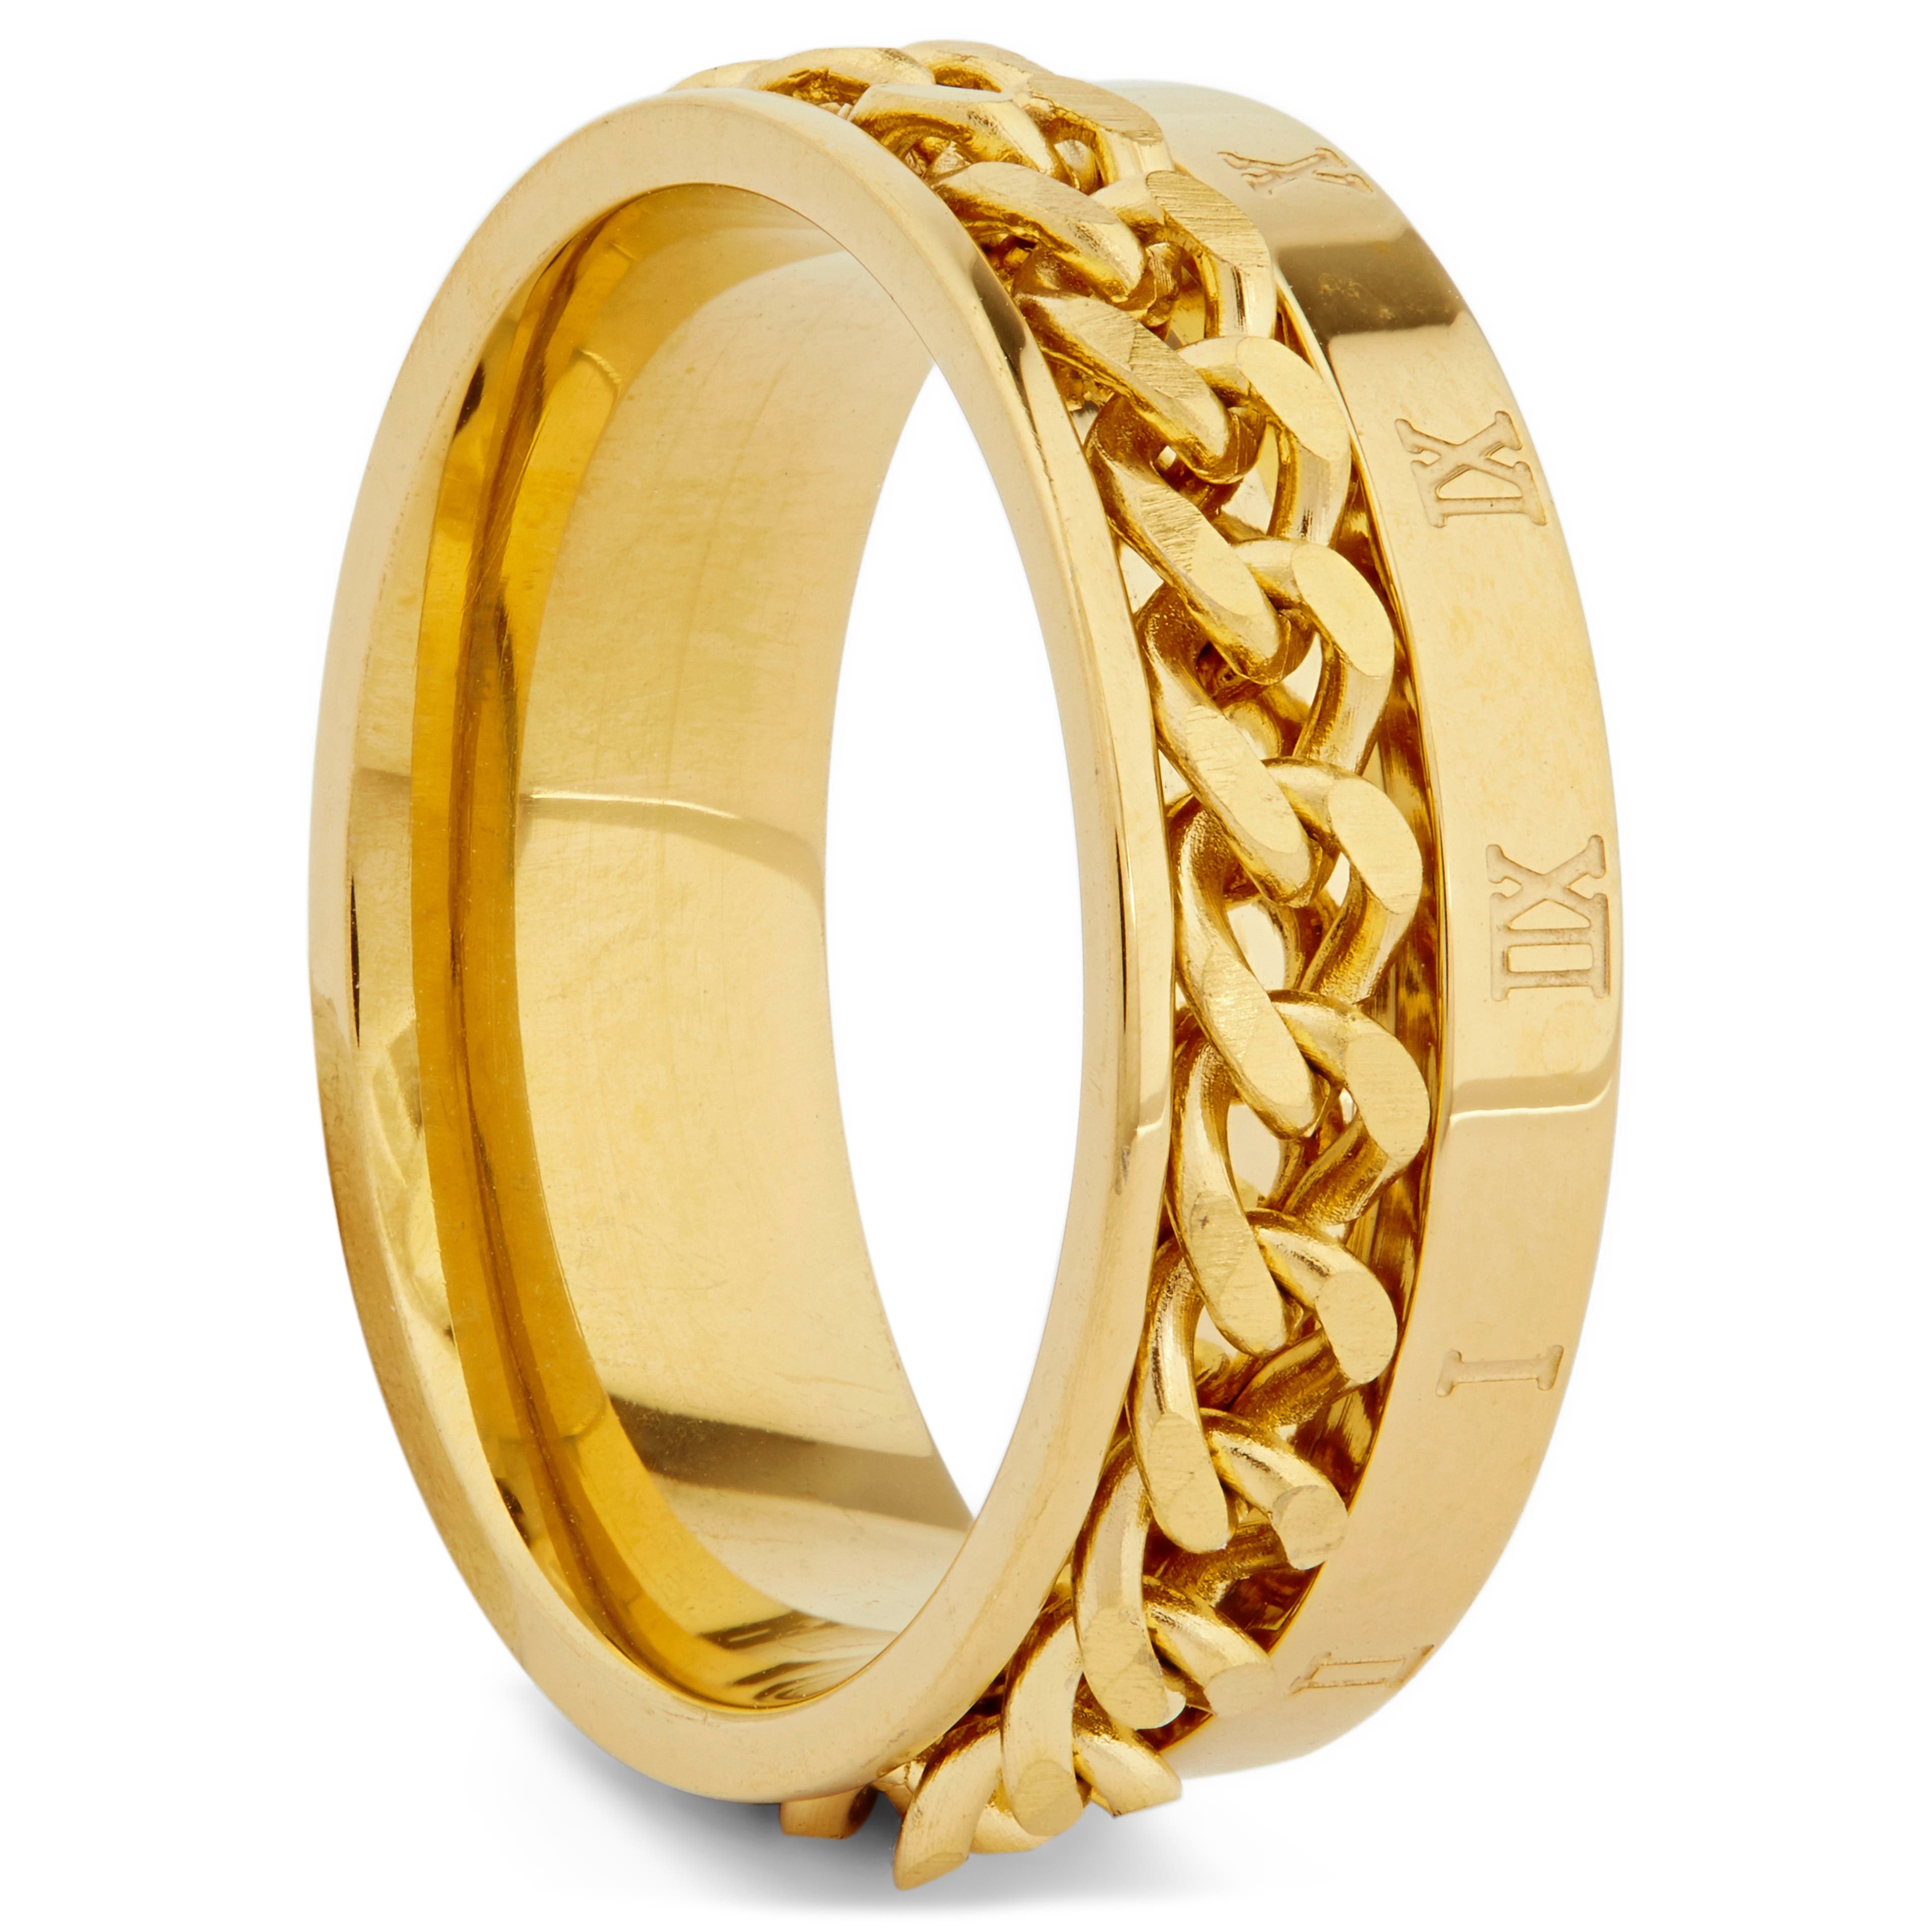 Římský řetízkový prsten ve zlaté barvě